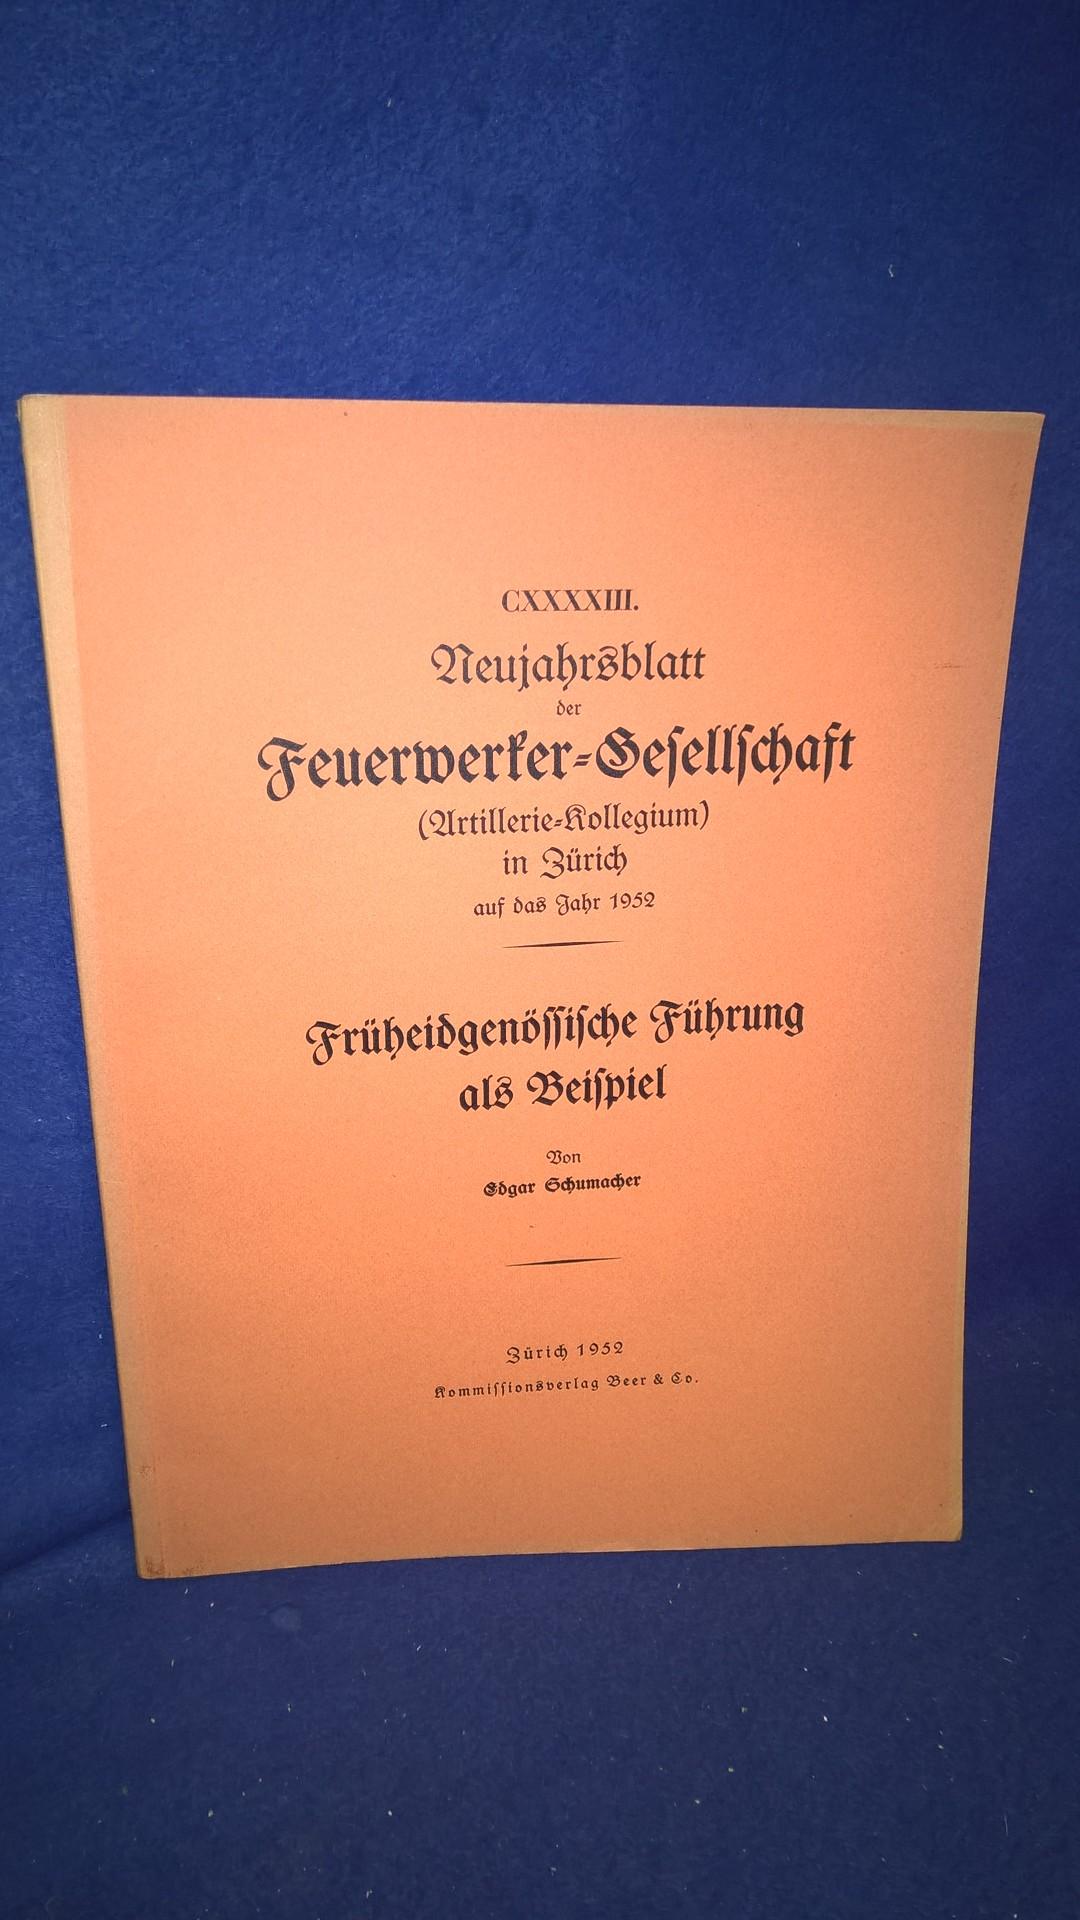 Früheidgenössische Führung als Beispiel. Aus der Reihe: Neujahrsblatt der Feuerwerker-Gesellschaft ( Artillerie-Kollegium ) in Zürich auf das Jahr 1952.